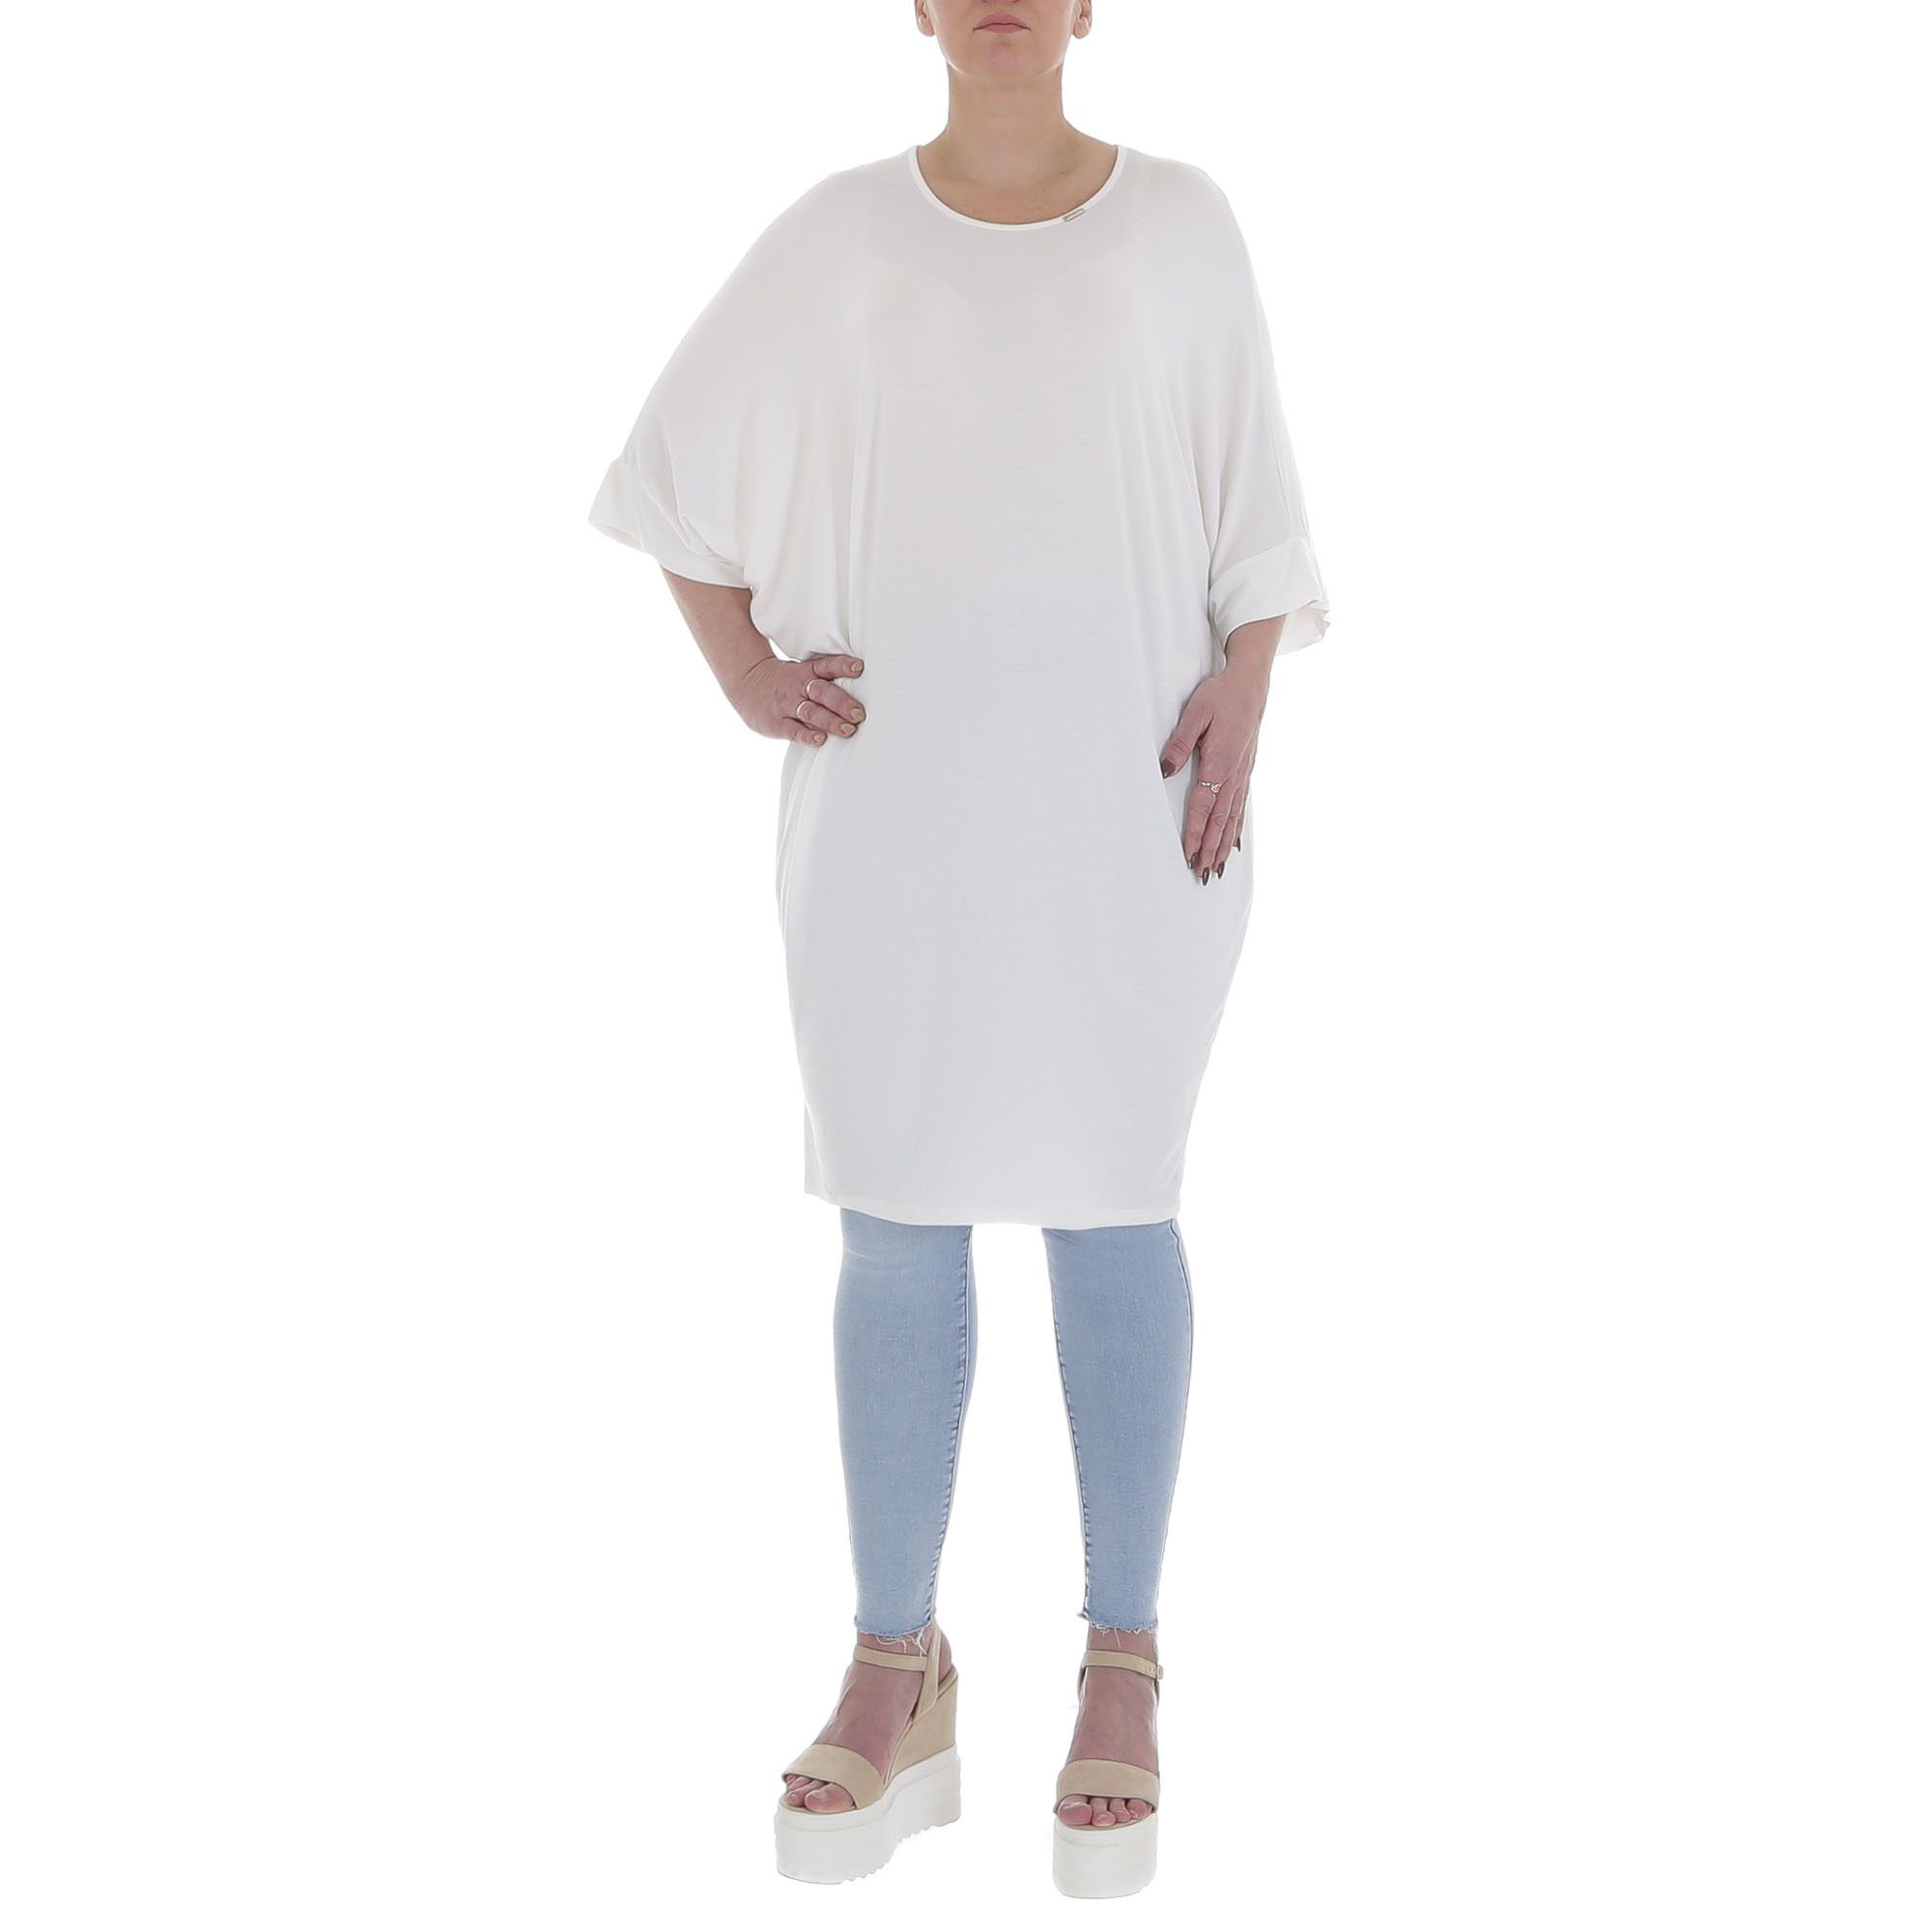 Ital-Design Tunikashirt Damen Freizeit Top & Shirt in Weiß